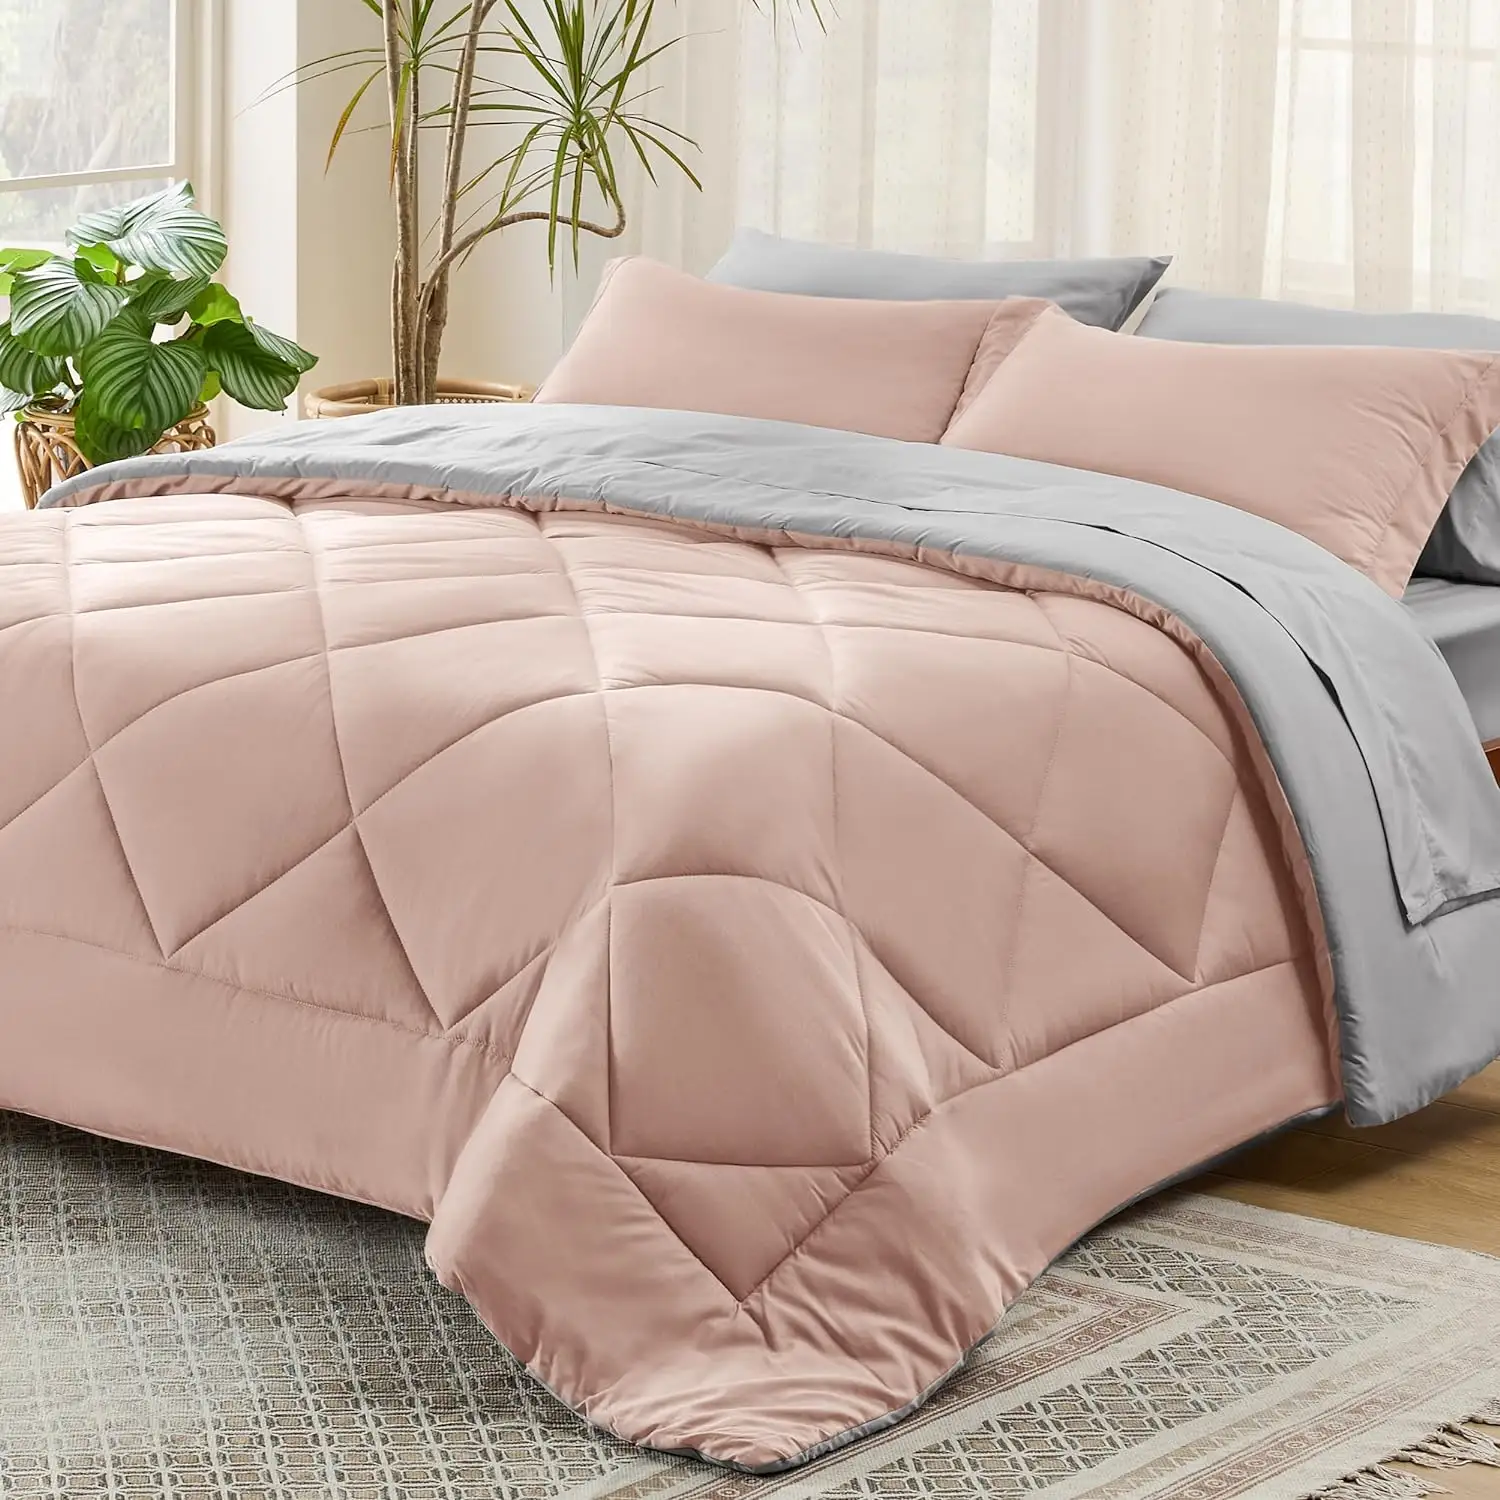 Blush Pink 7 piezas Reversible Queen Bed in a Bag Queen Bed Set con edredones Sábanas Fundas de almohada y fundas Queen Juegos de cama